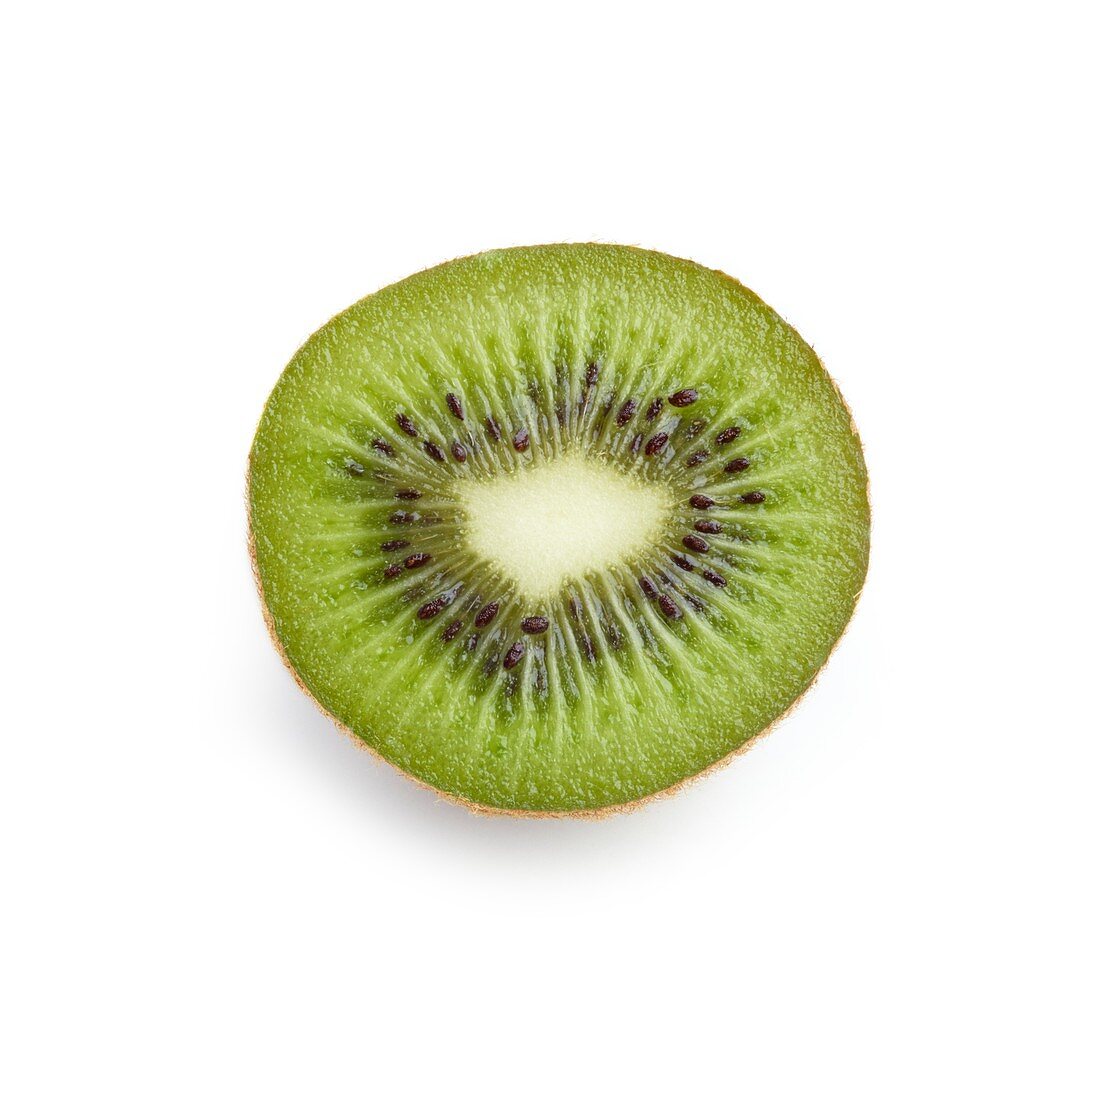 Half a kiwi